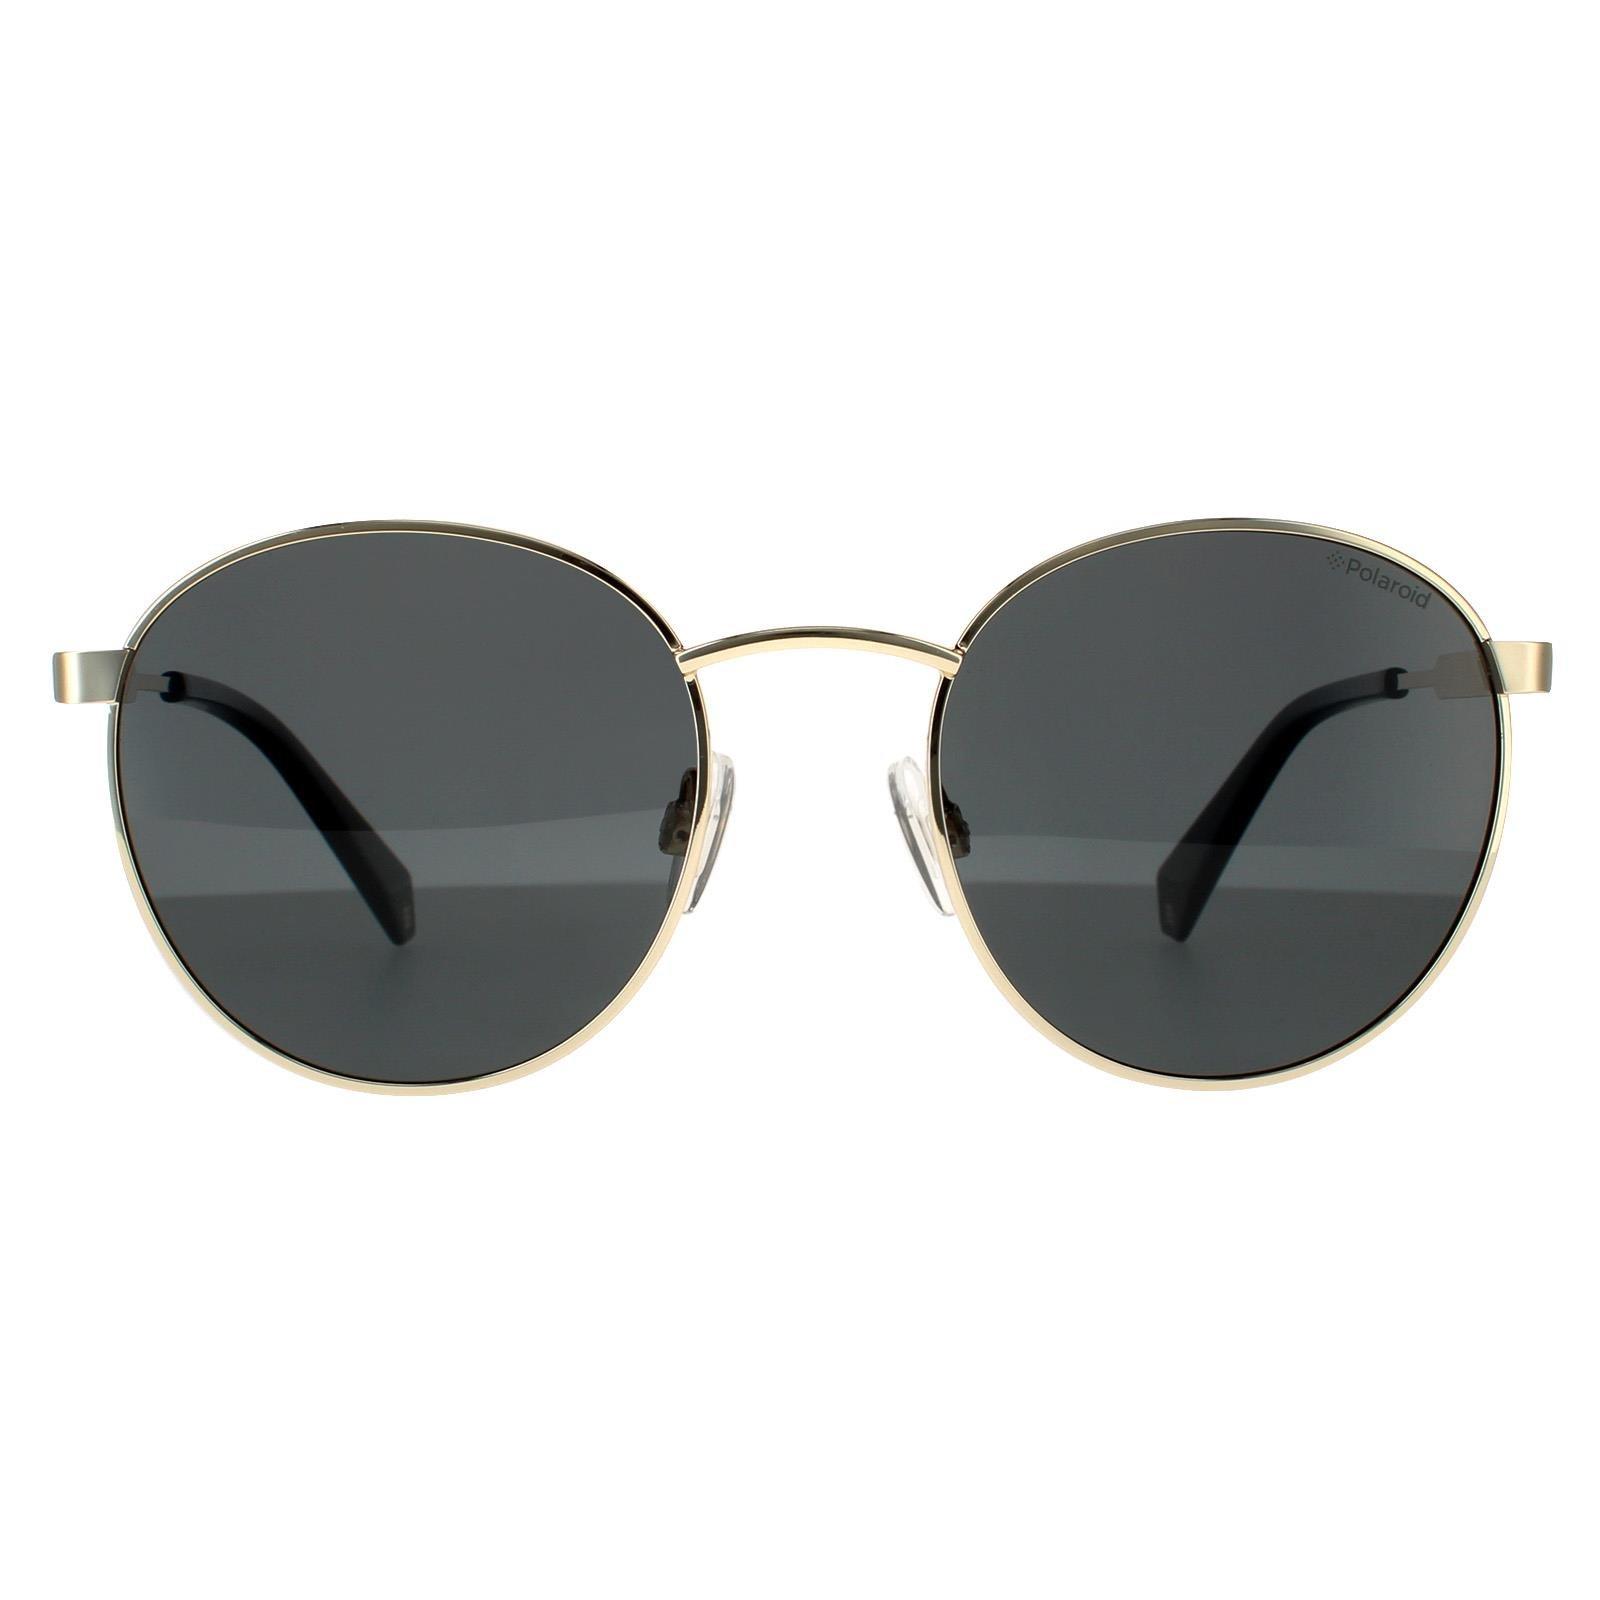 Круглые золотисто-серые серые поляризованные солнцезащитные очки Polaroid, золото polaroid pld 8038 s b3v m9